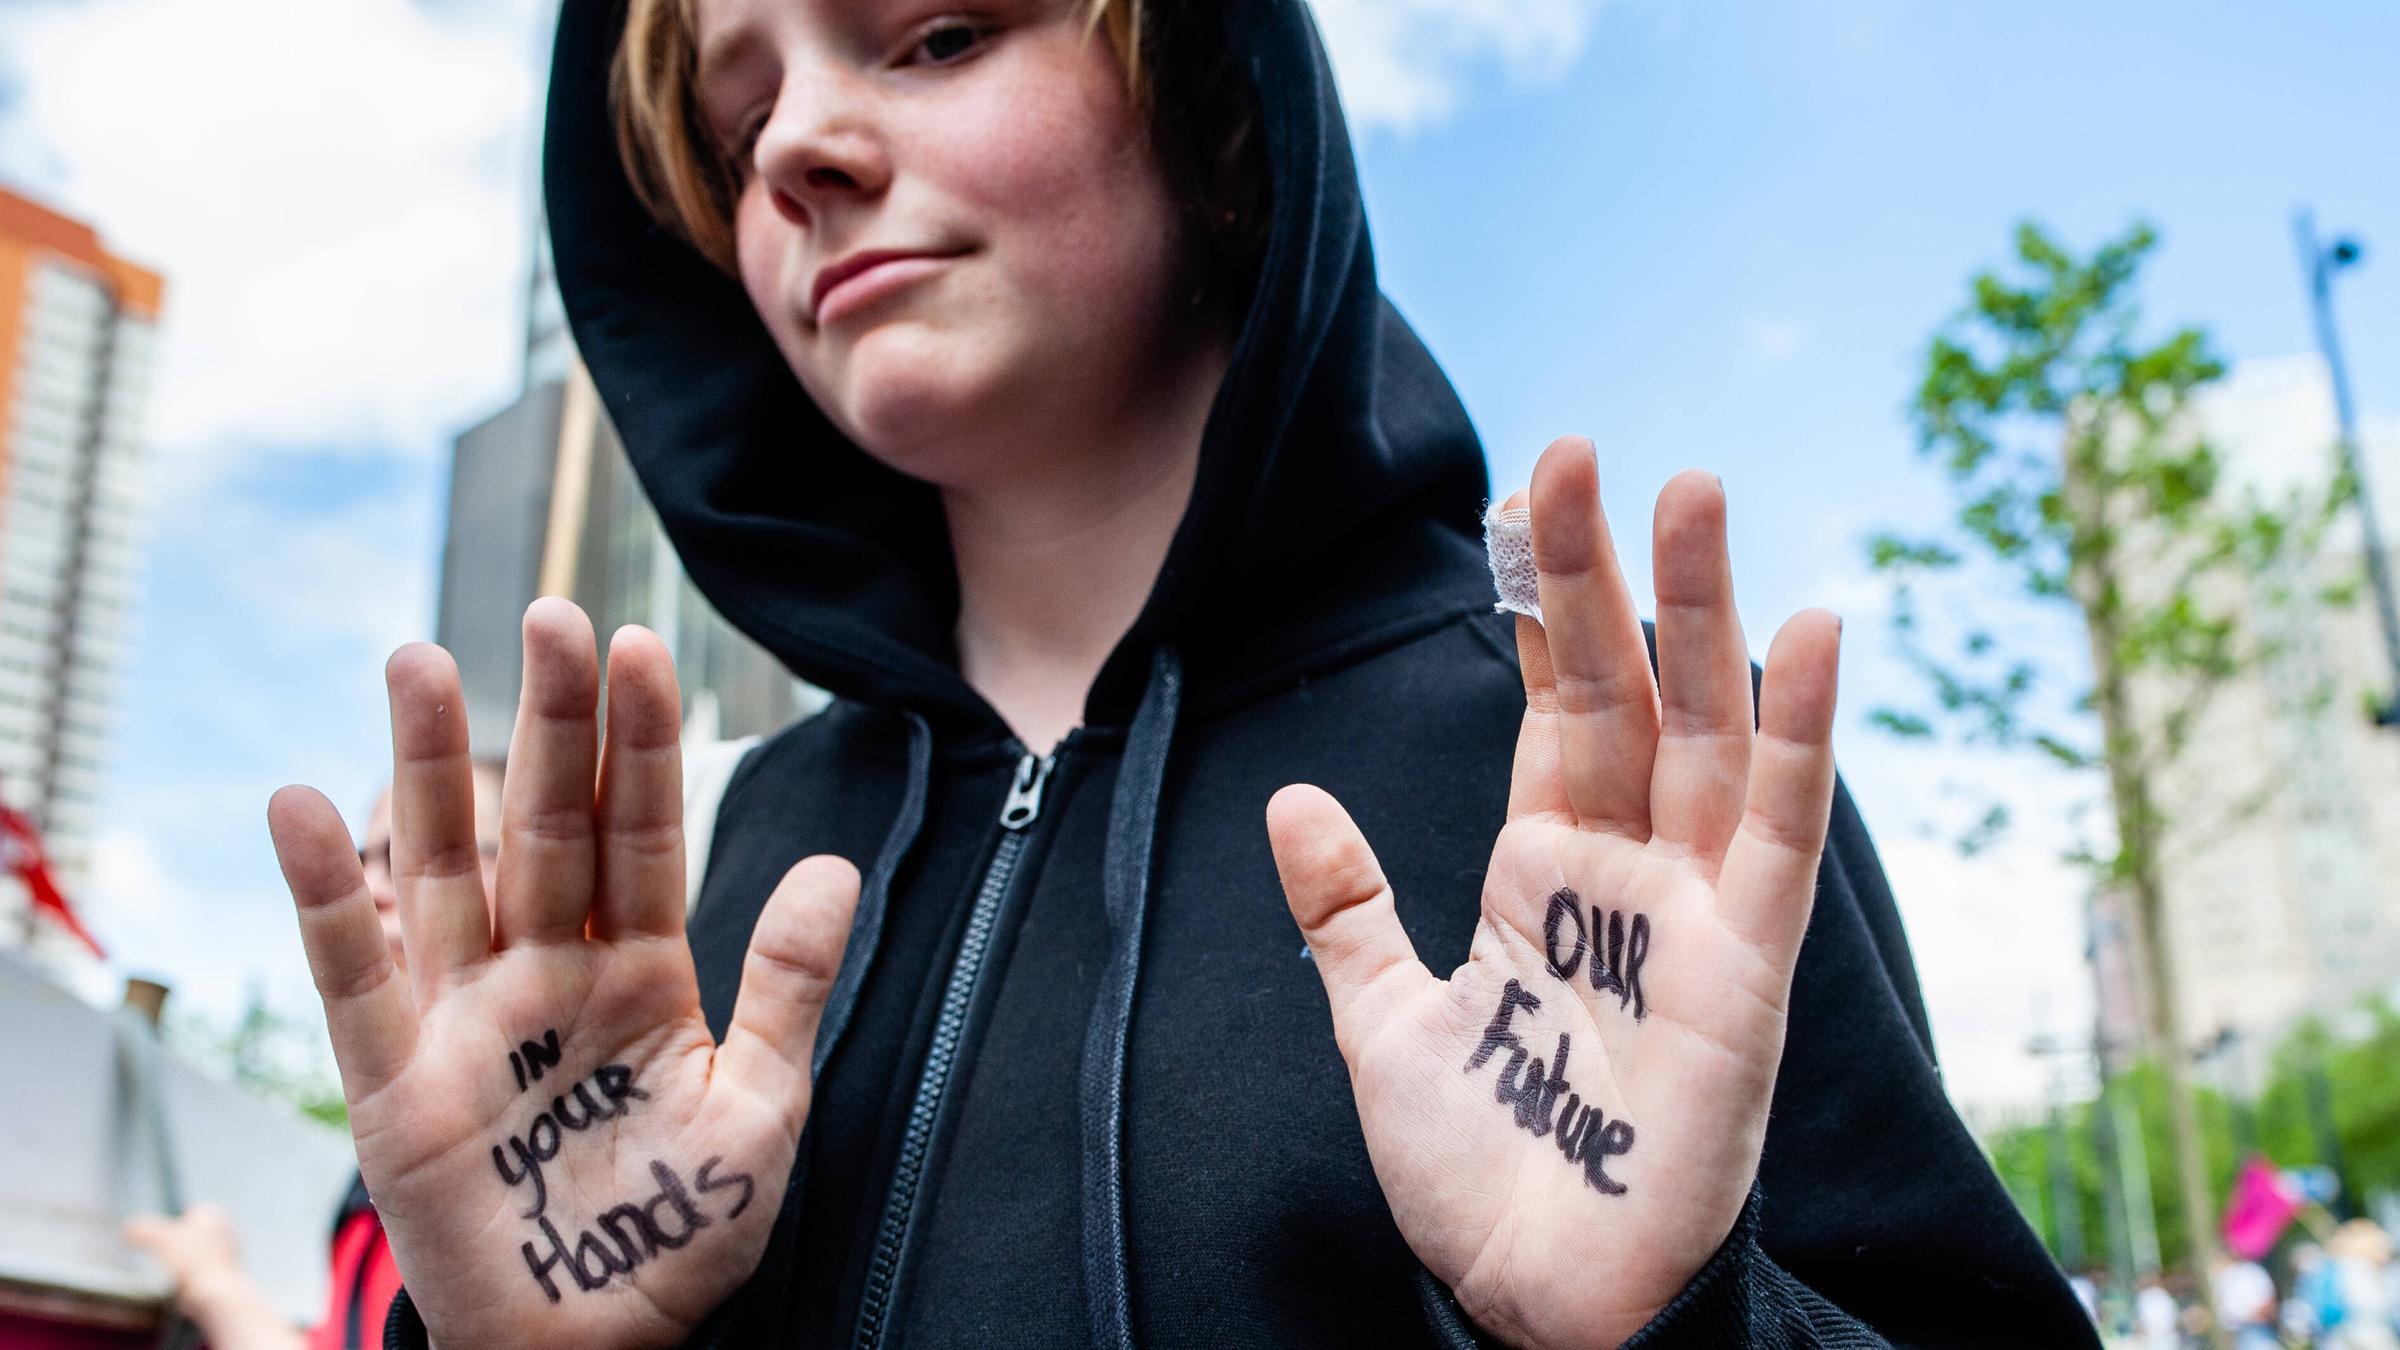 Ein junger Demonstrant der Gruppe Extinction Rebellion zeigt seine Hände, auf denen geschrieben steht: "In your Hands - Our Future", zu Deutsch: "In deinen Händen - unsere Zukunft"